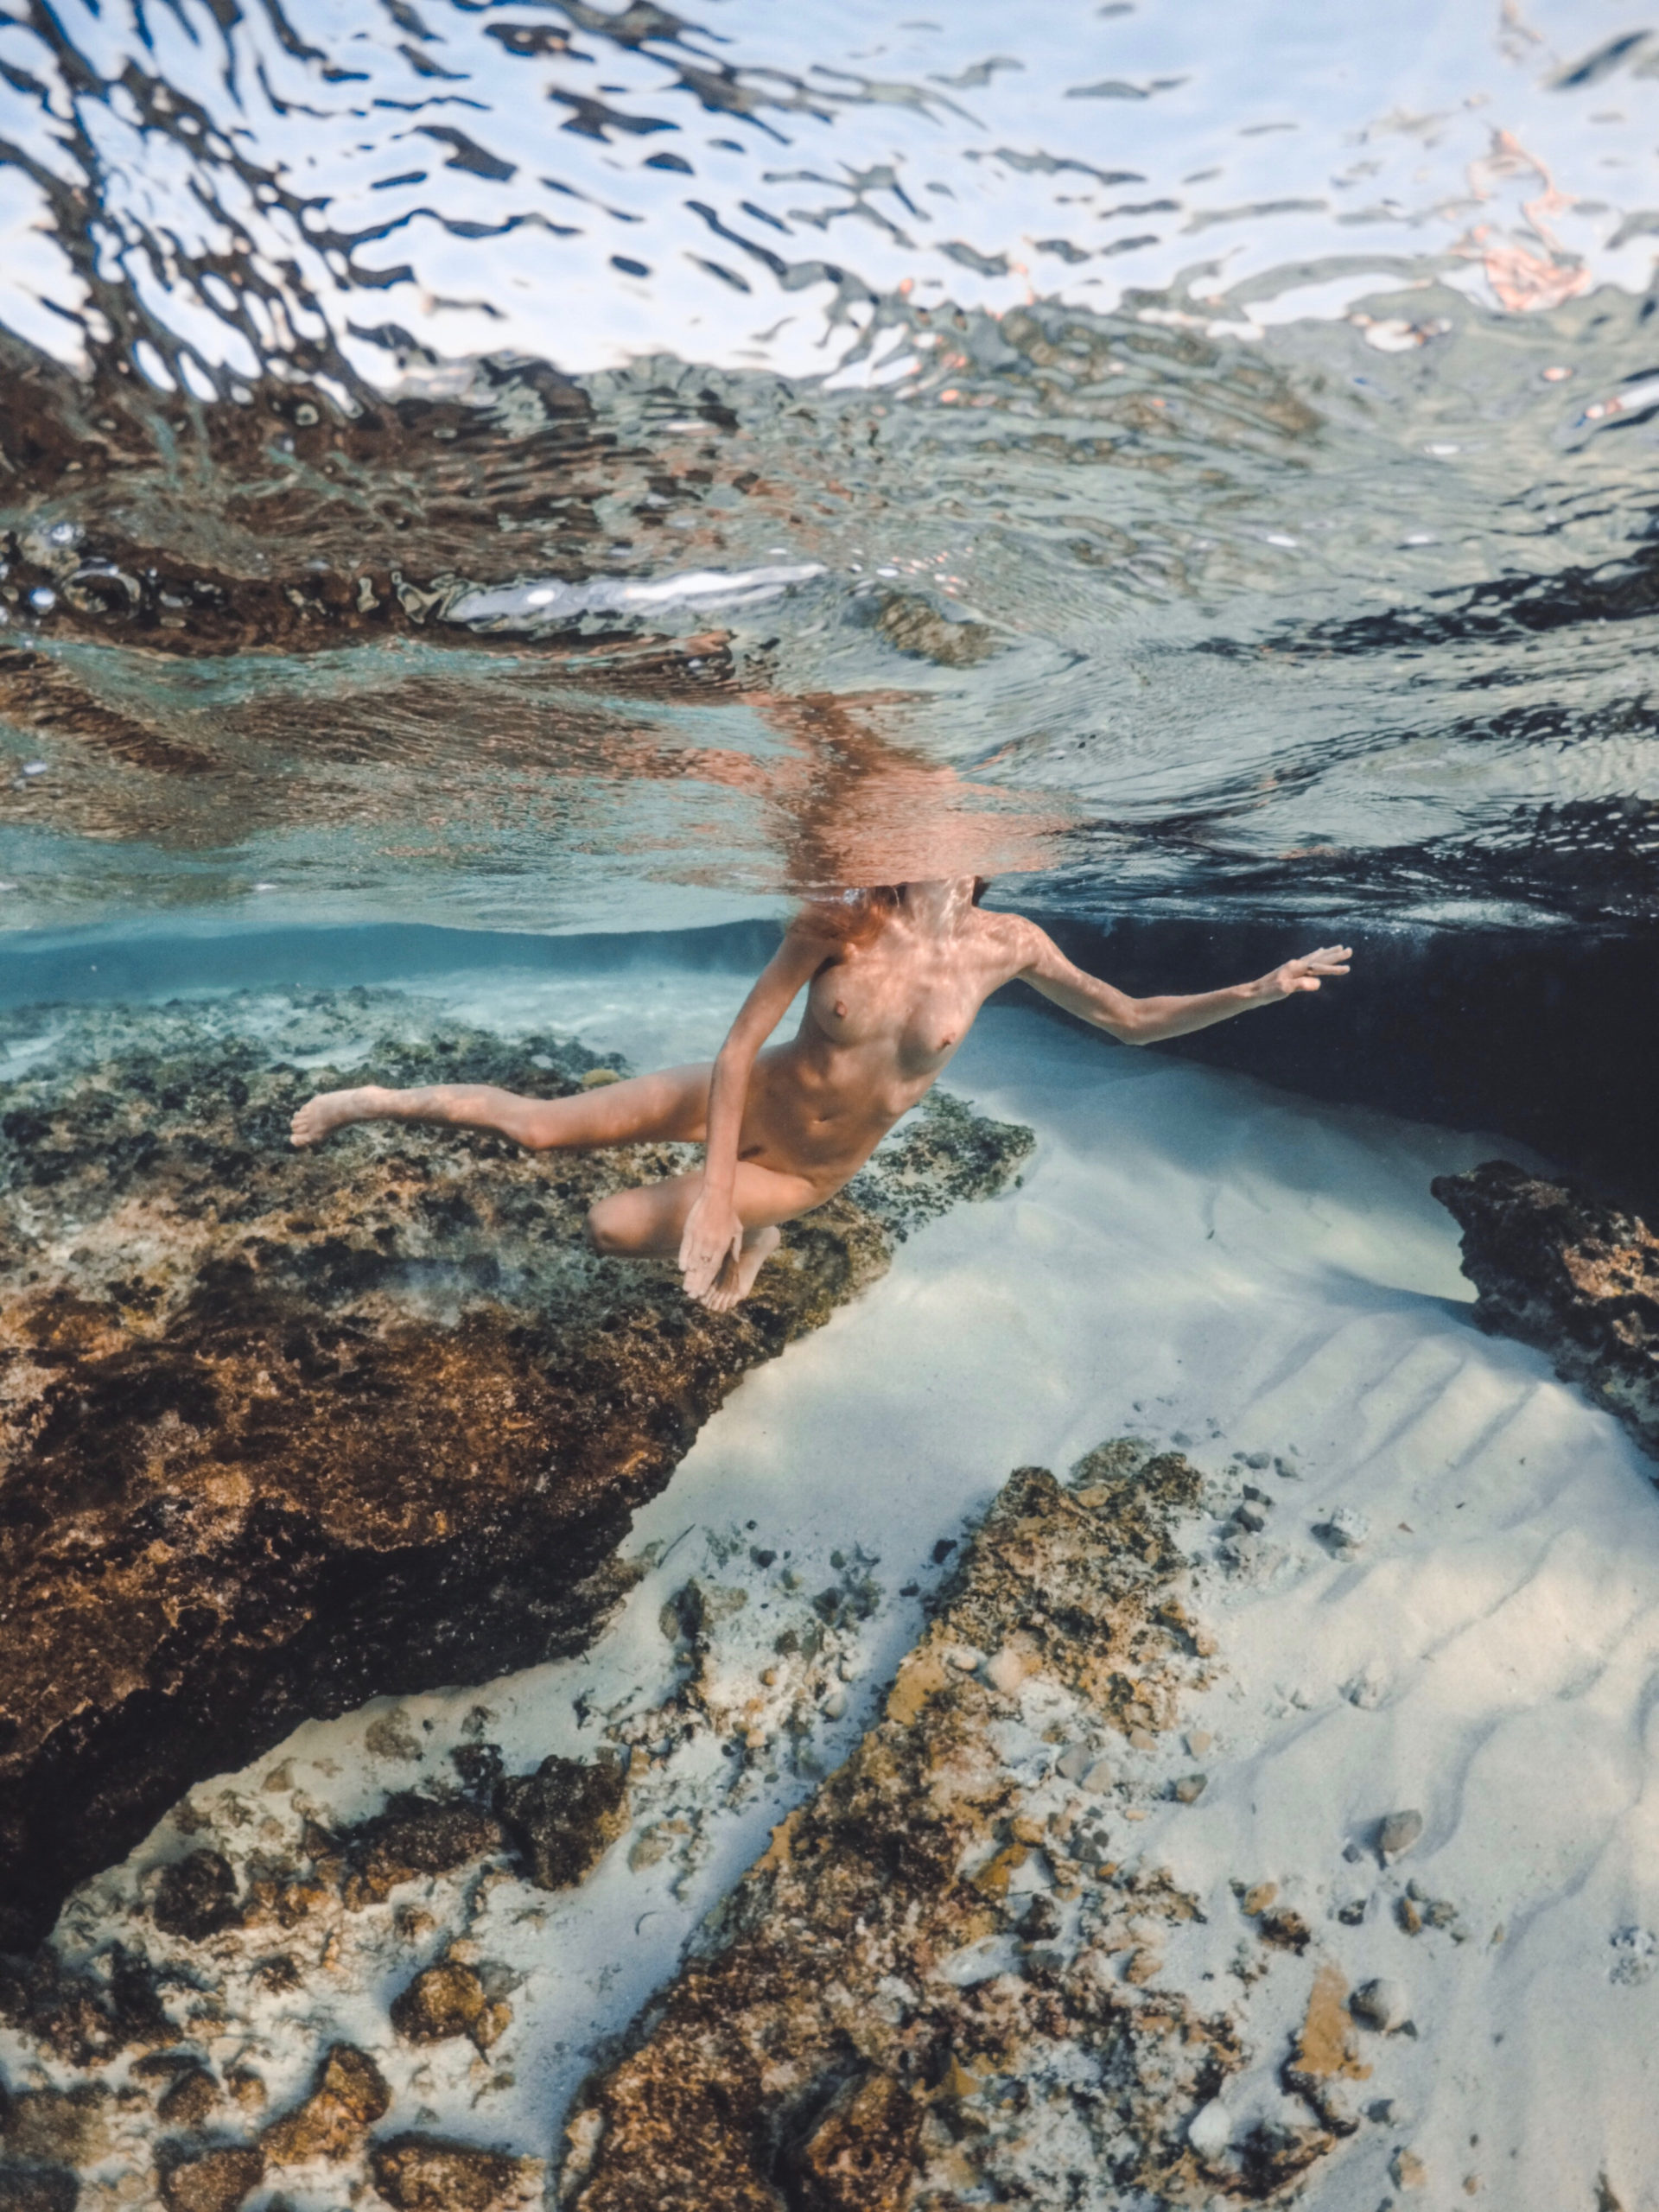 Amberleigh West Instagram Model Nudes Leaks